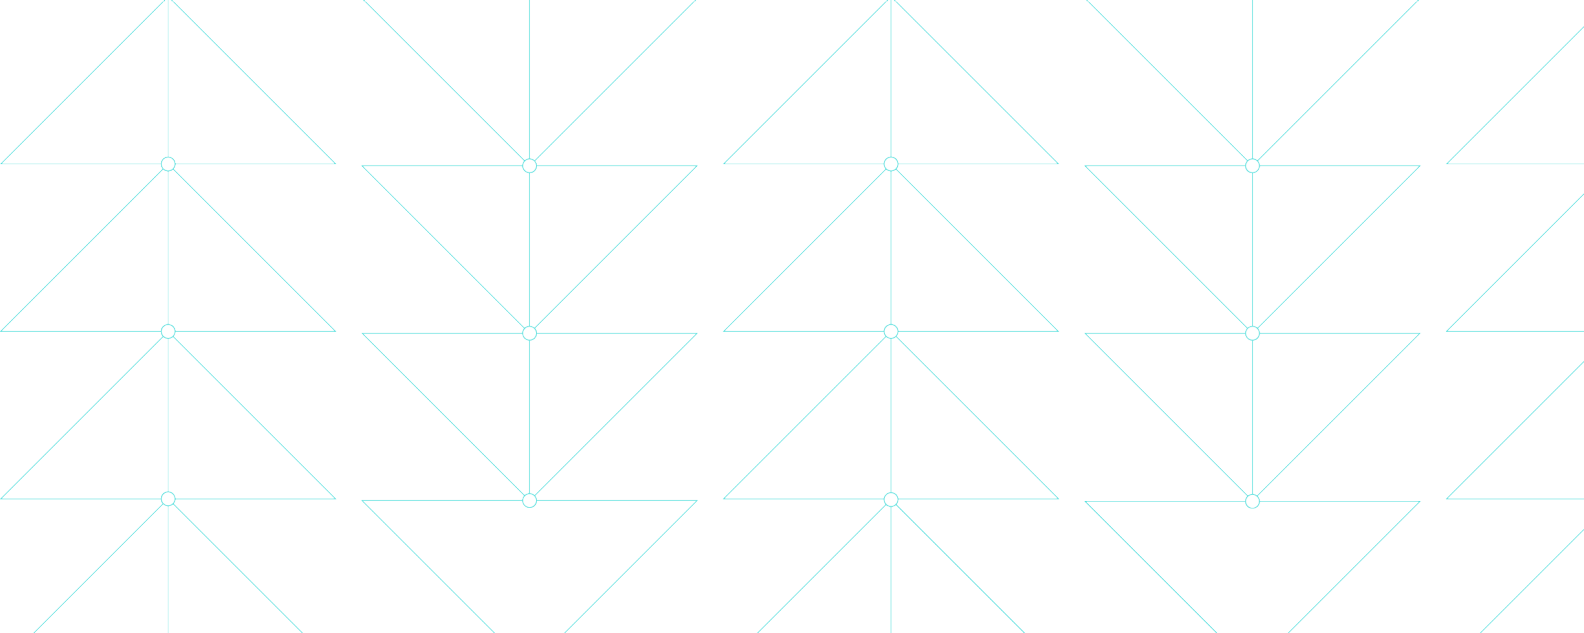 섬세한 삼각형 패턴을 형성하는 얇은 파란색 선을 보여주는 그림